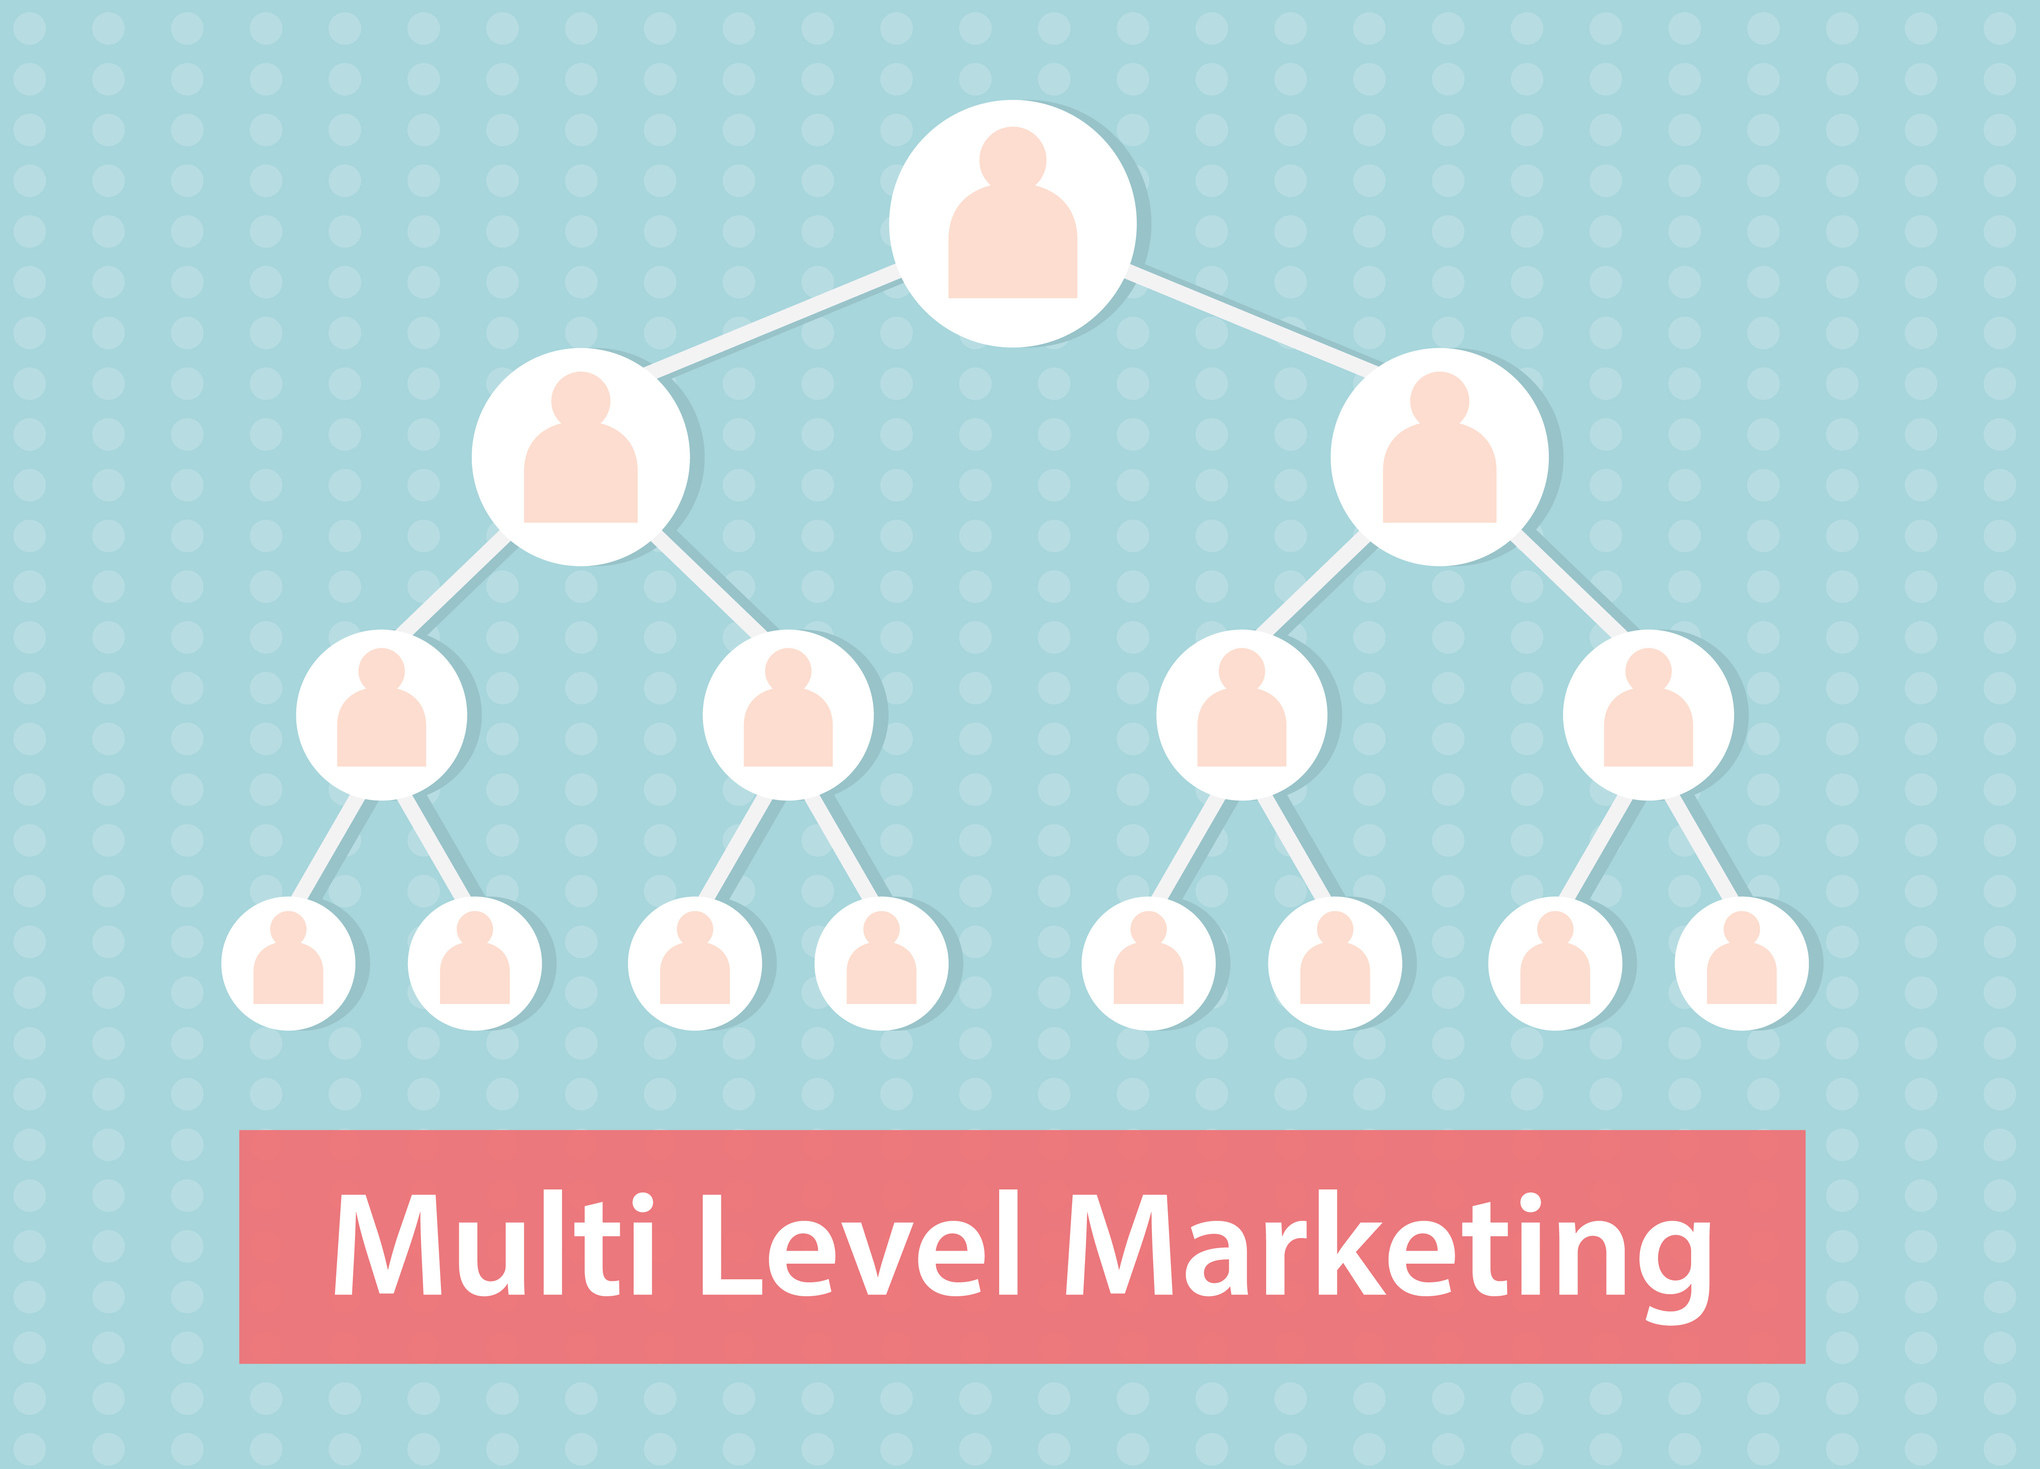 Multi-level marketing diagram